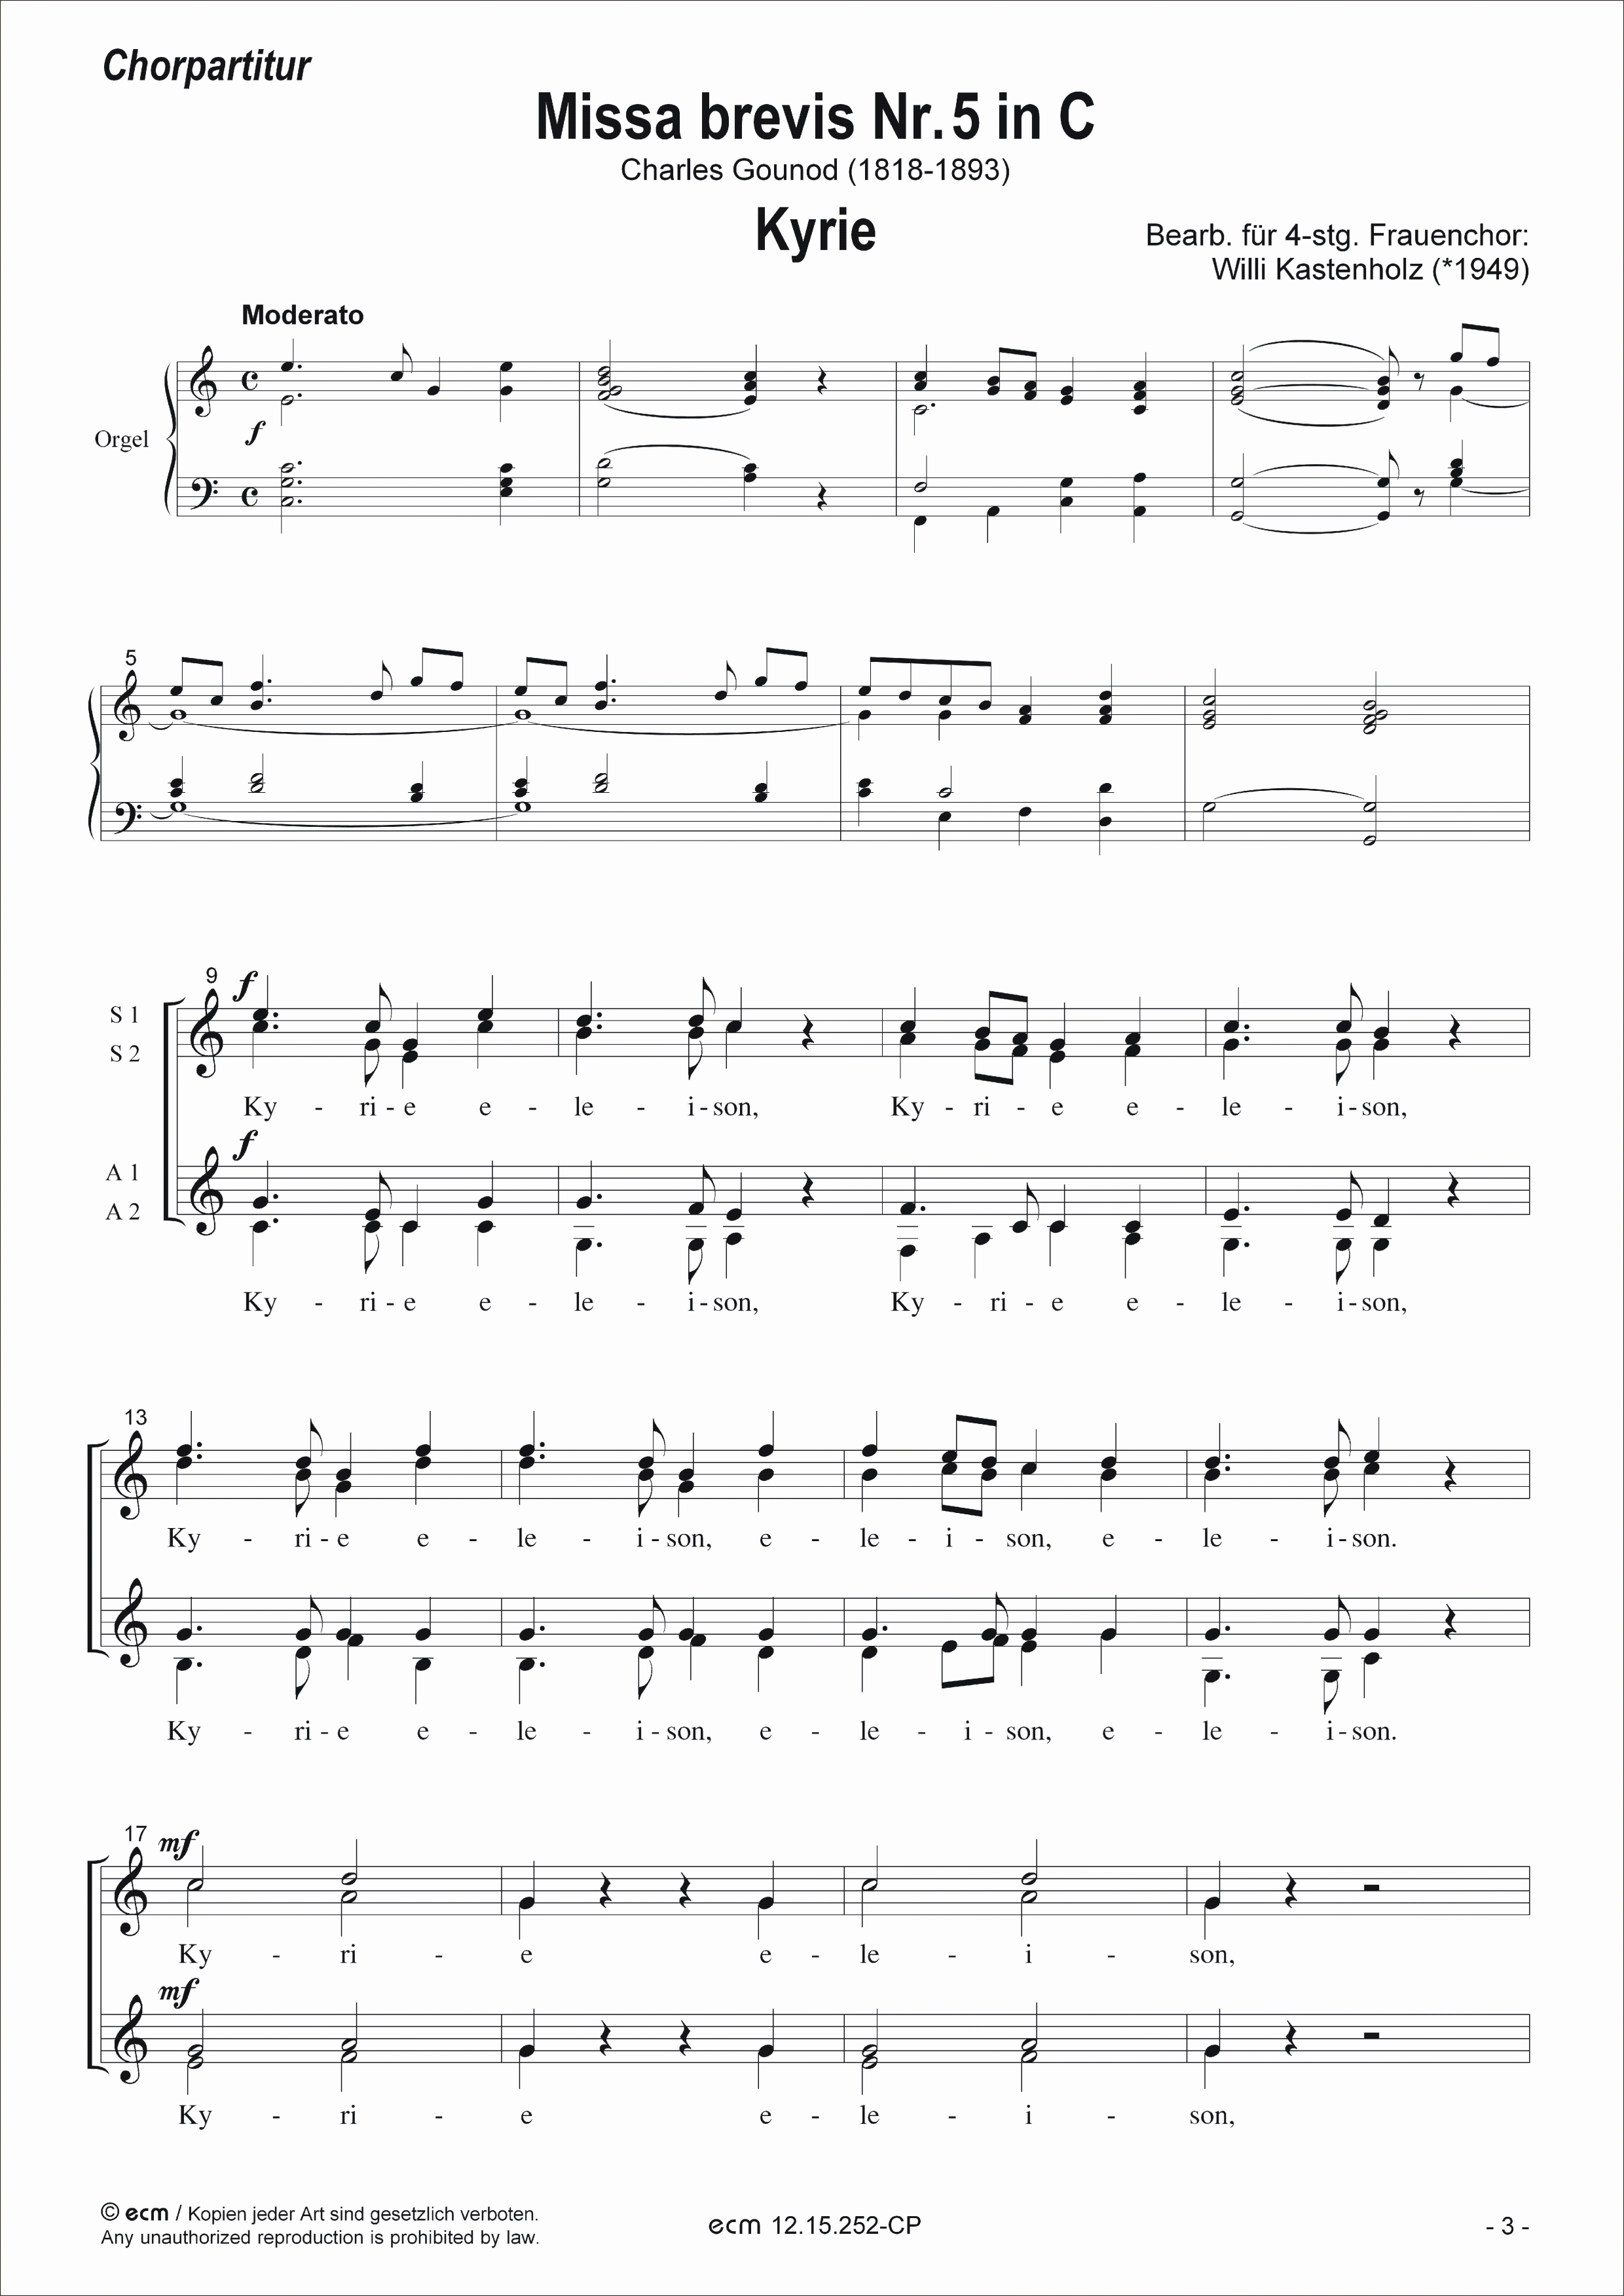 Missa brevis Nr. 5 in C (Chorpartitur)